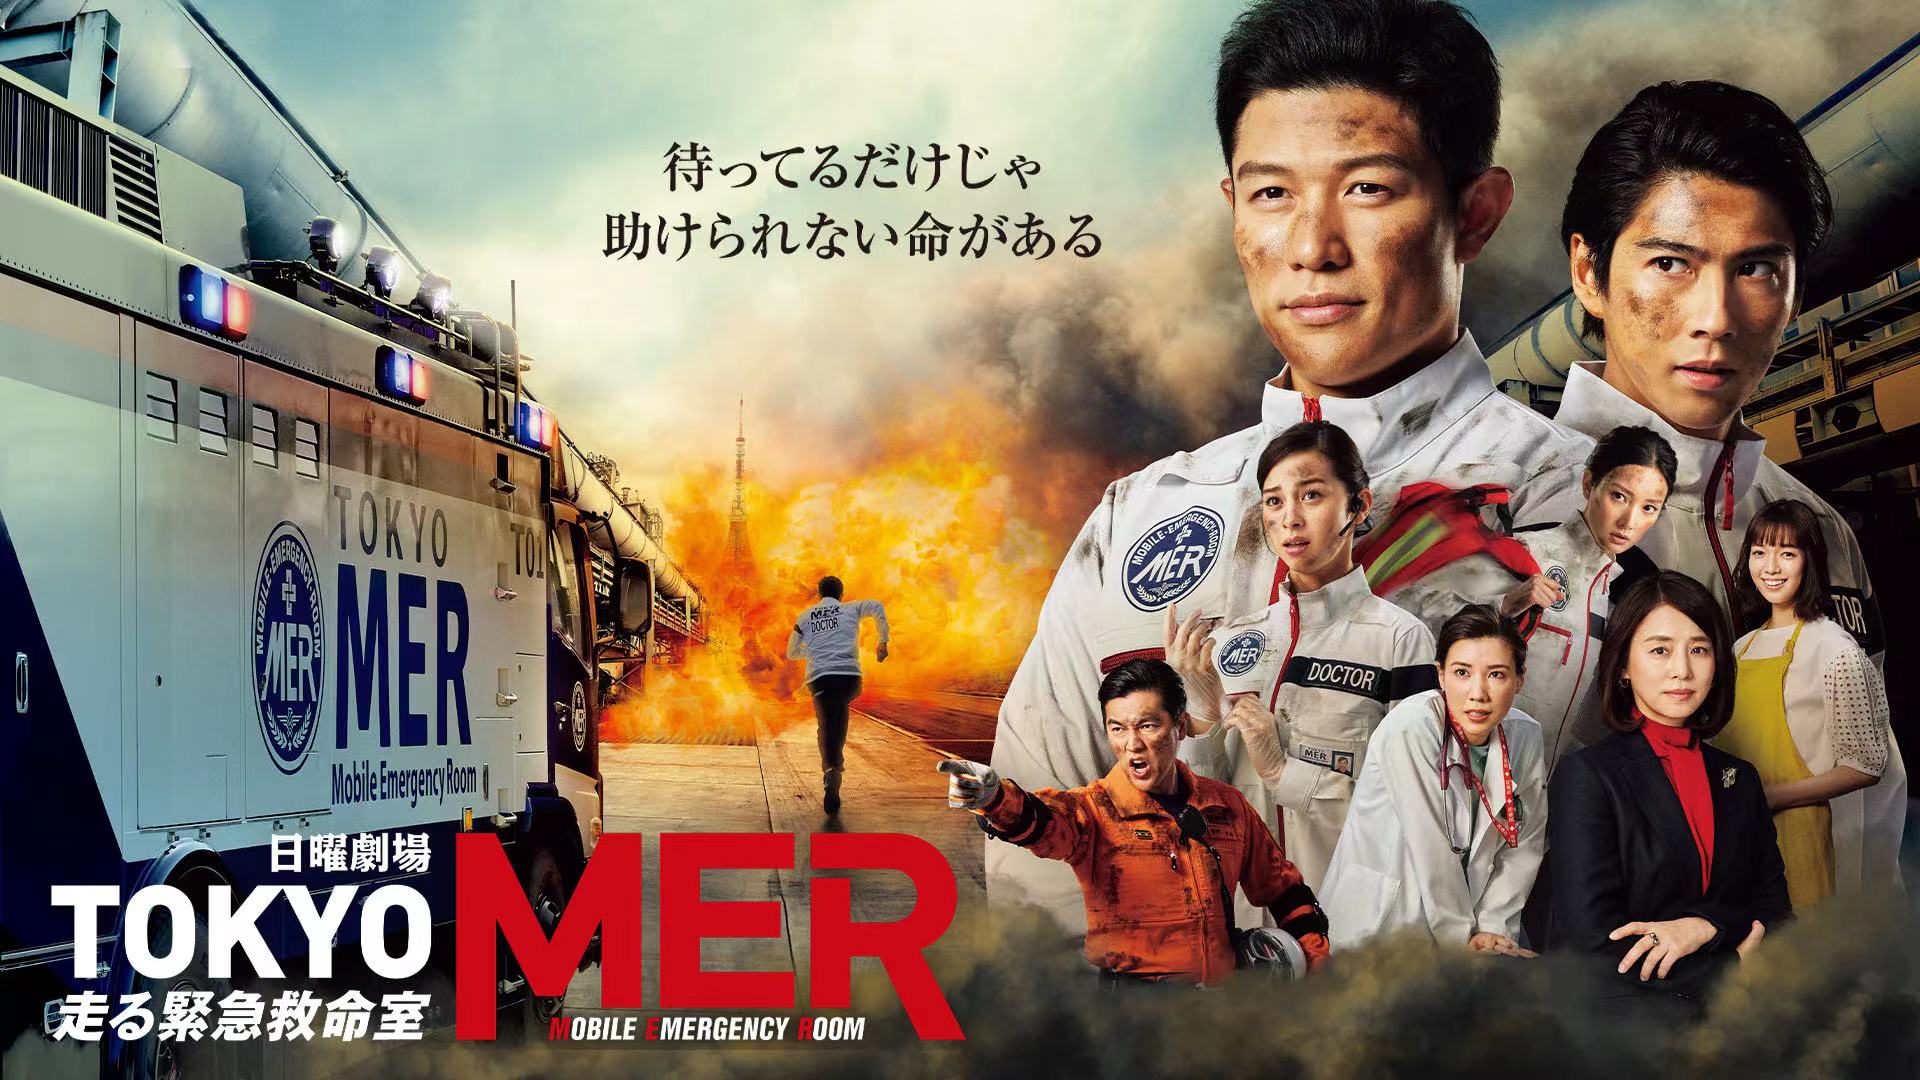 铃木亮平主演日剧《TOKYO MER》将推出电影版，原班人马回归_沪江日语学习网